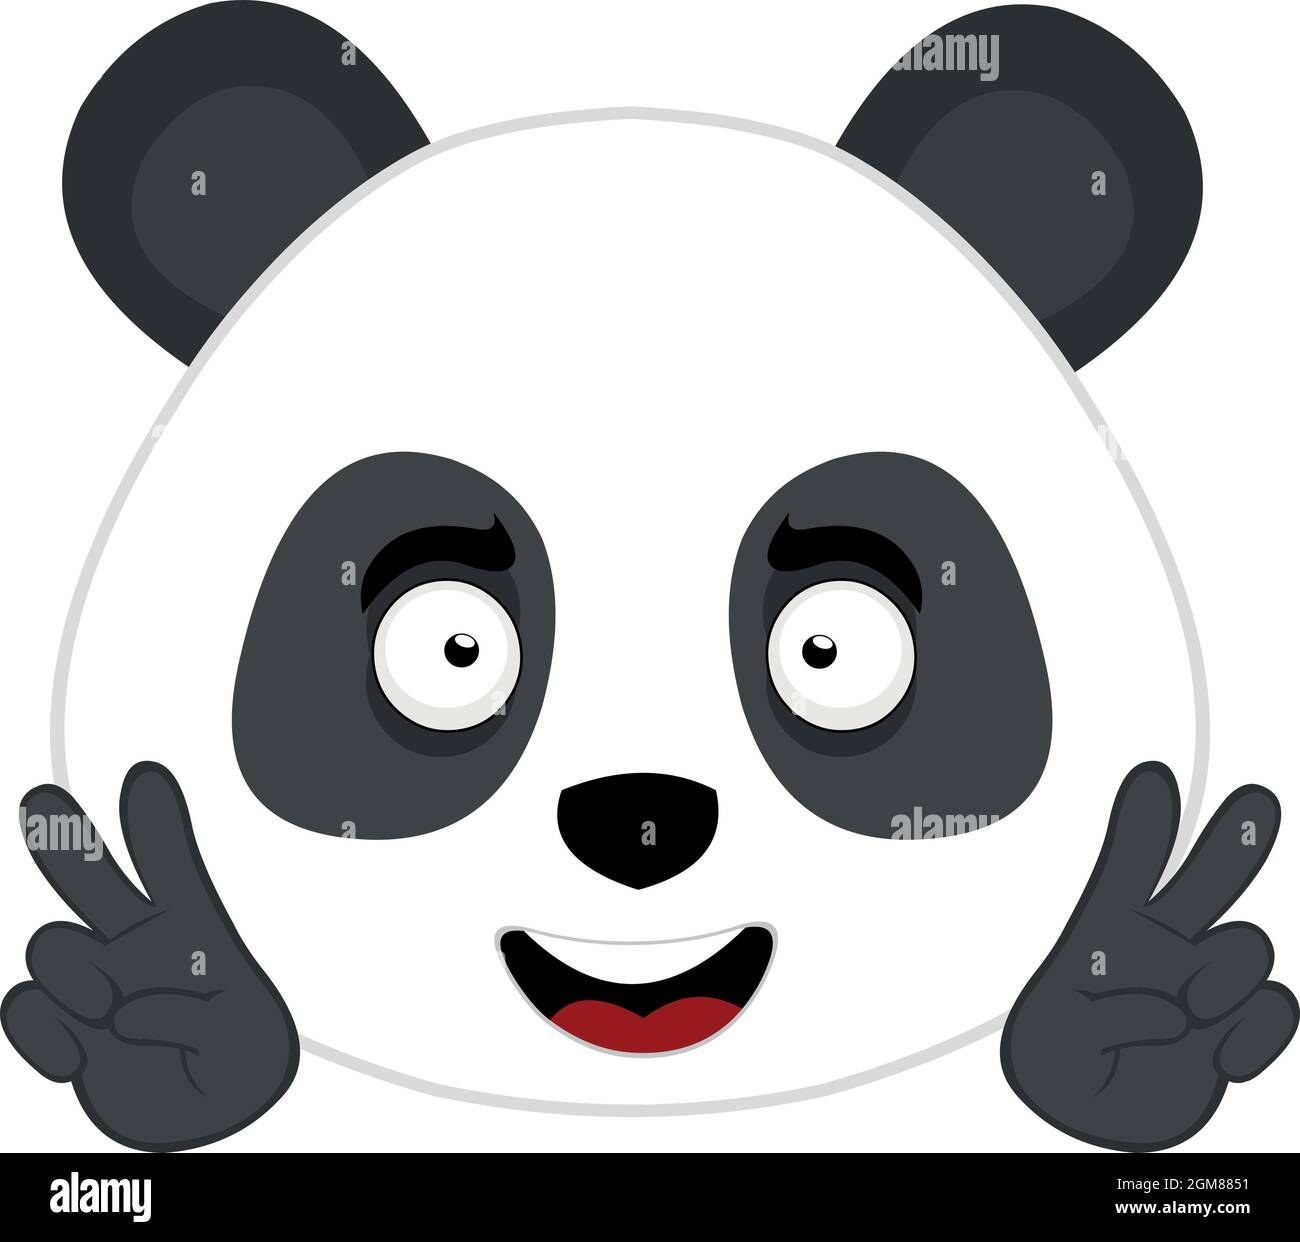 Illustrazione vettoriale dell'emoticon del volto di un orsetto di cartoni animati che fa il simbolo della pace e dell'amore o v per la vittoria con le mani Illustrazione Vettoriale